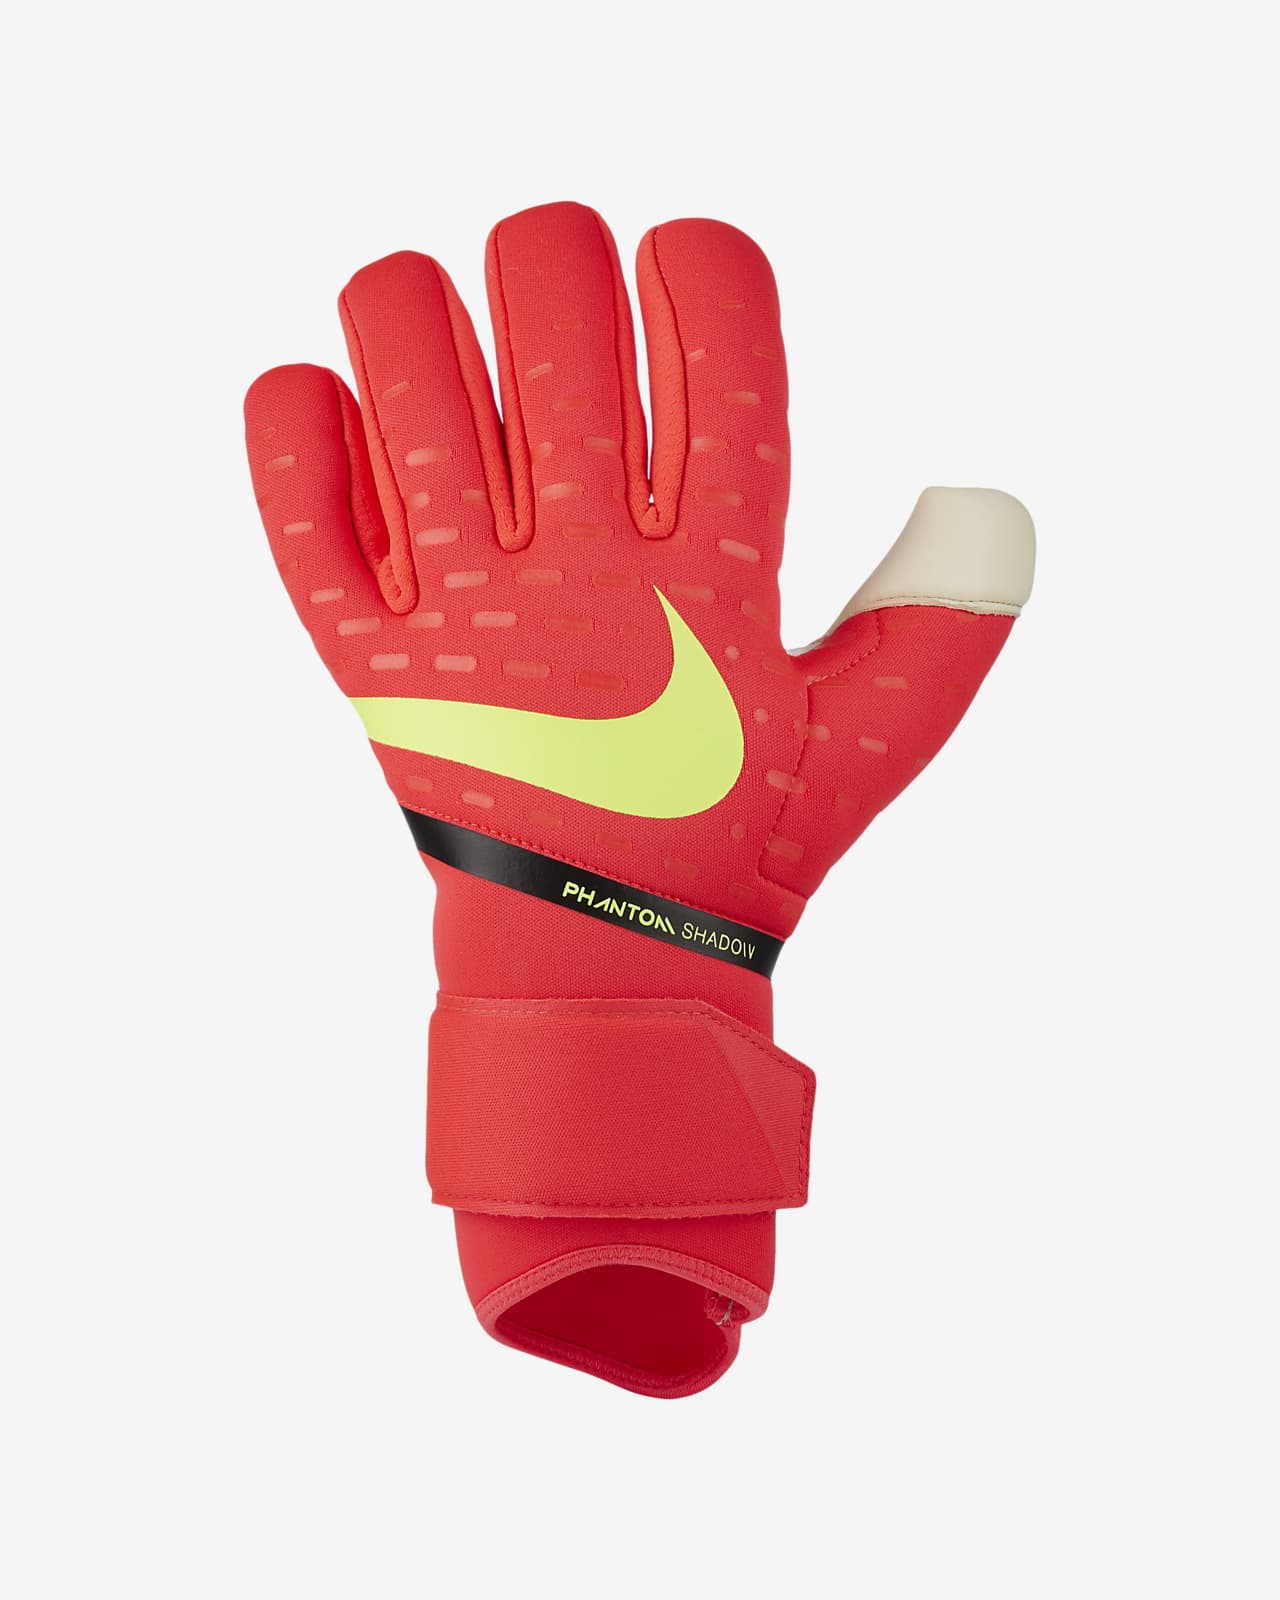 Футбольные перчатки Nike Goalkeeper Phantom Shadow